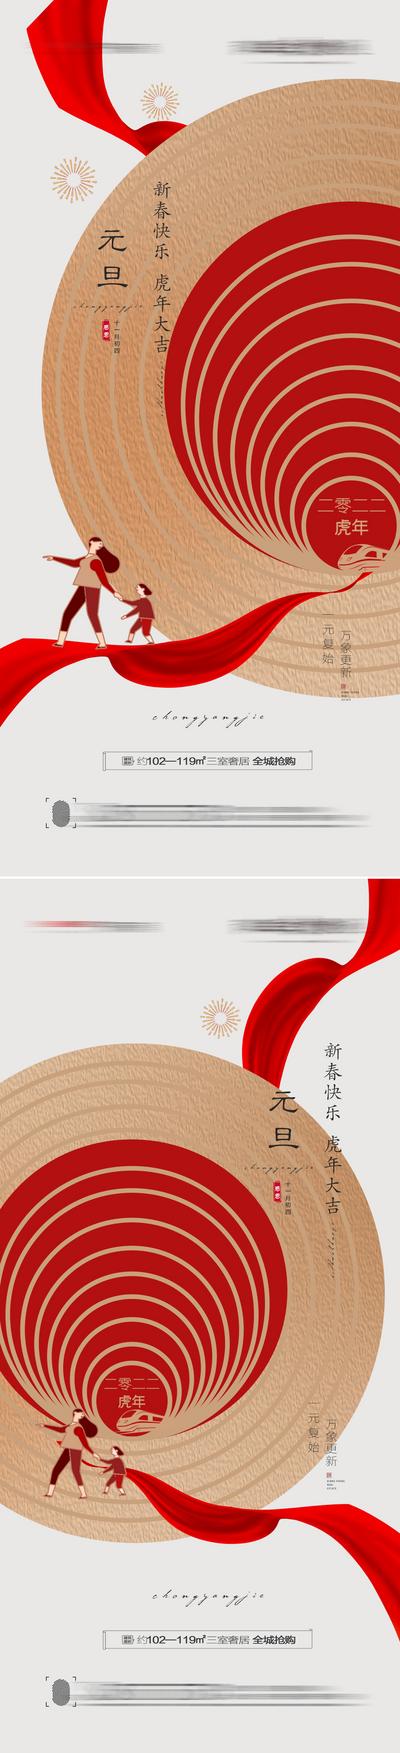 南门网 海报 地产 公历节日 元旦 虎年  回家 创意 系列  